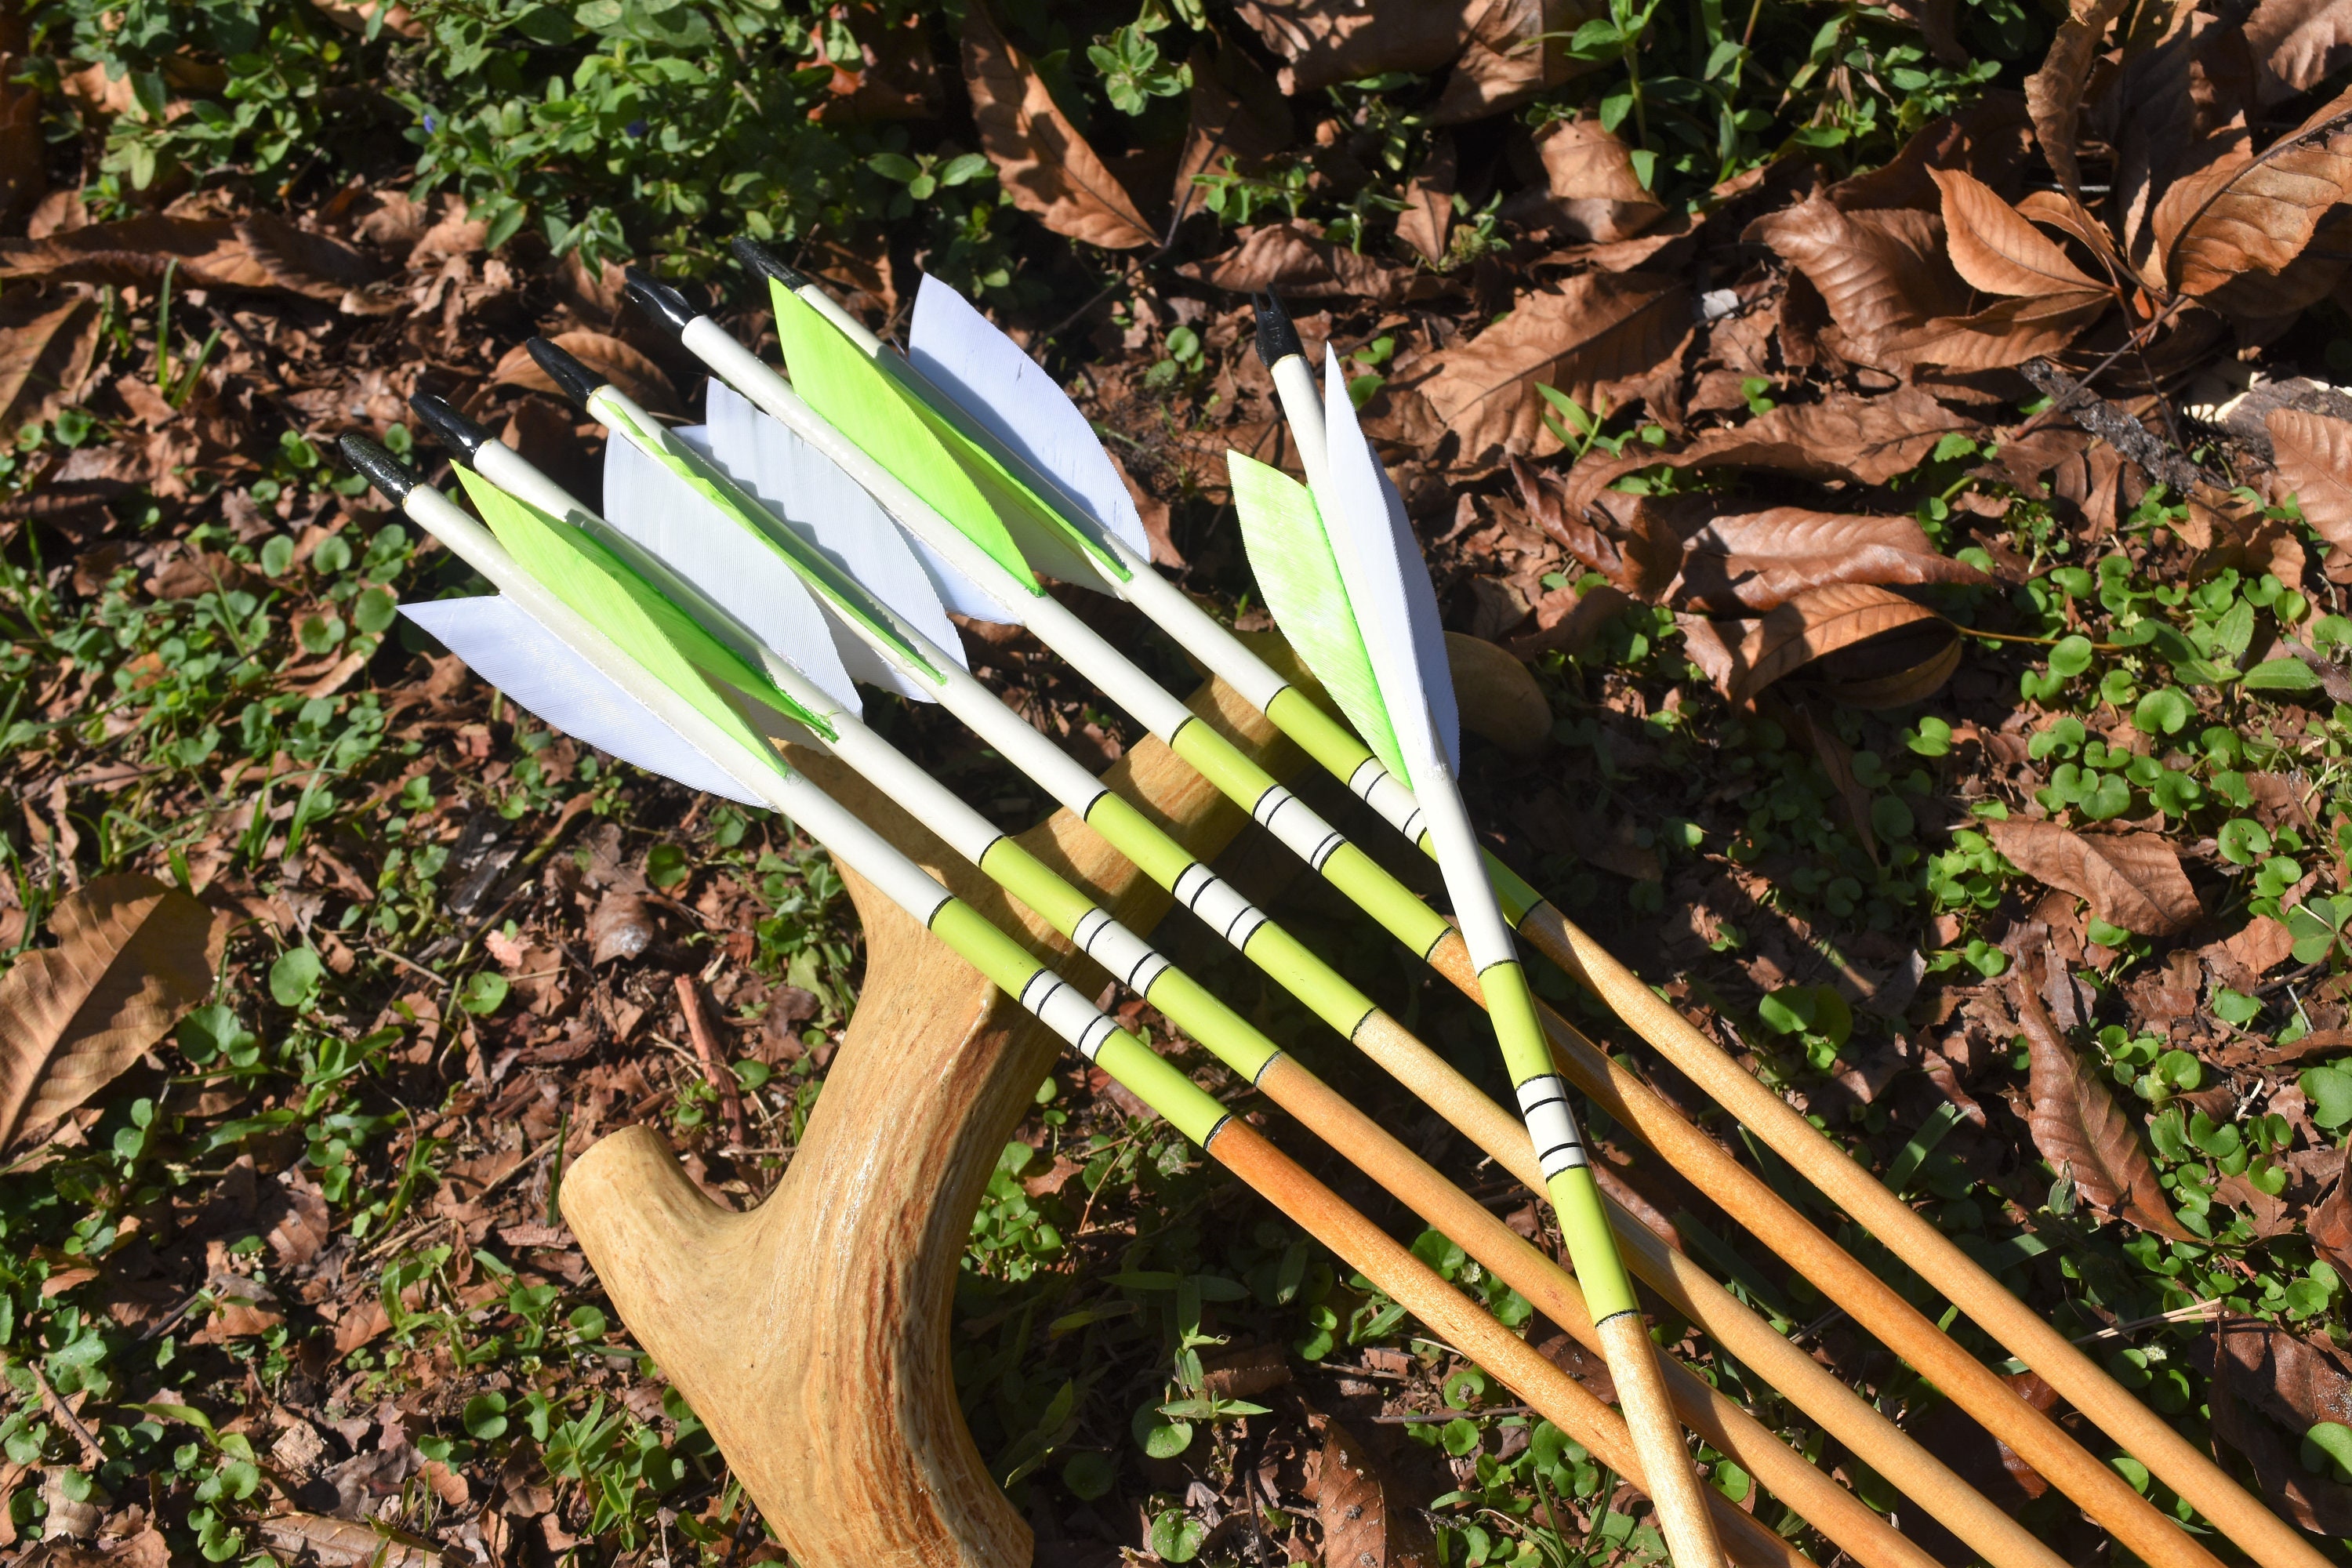 Archery arrows Port orford cedar arrows Bright lime green | Etsy